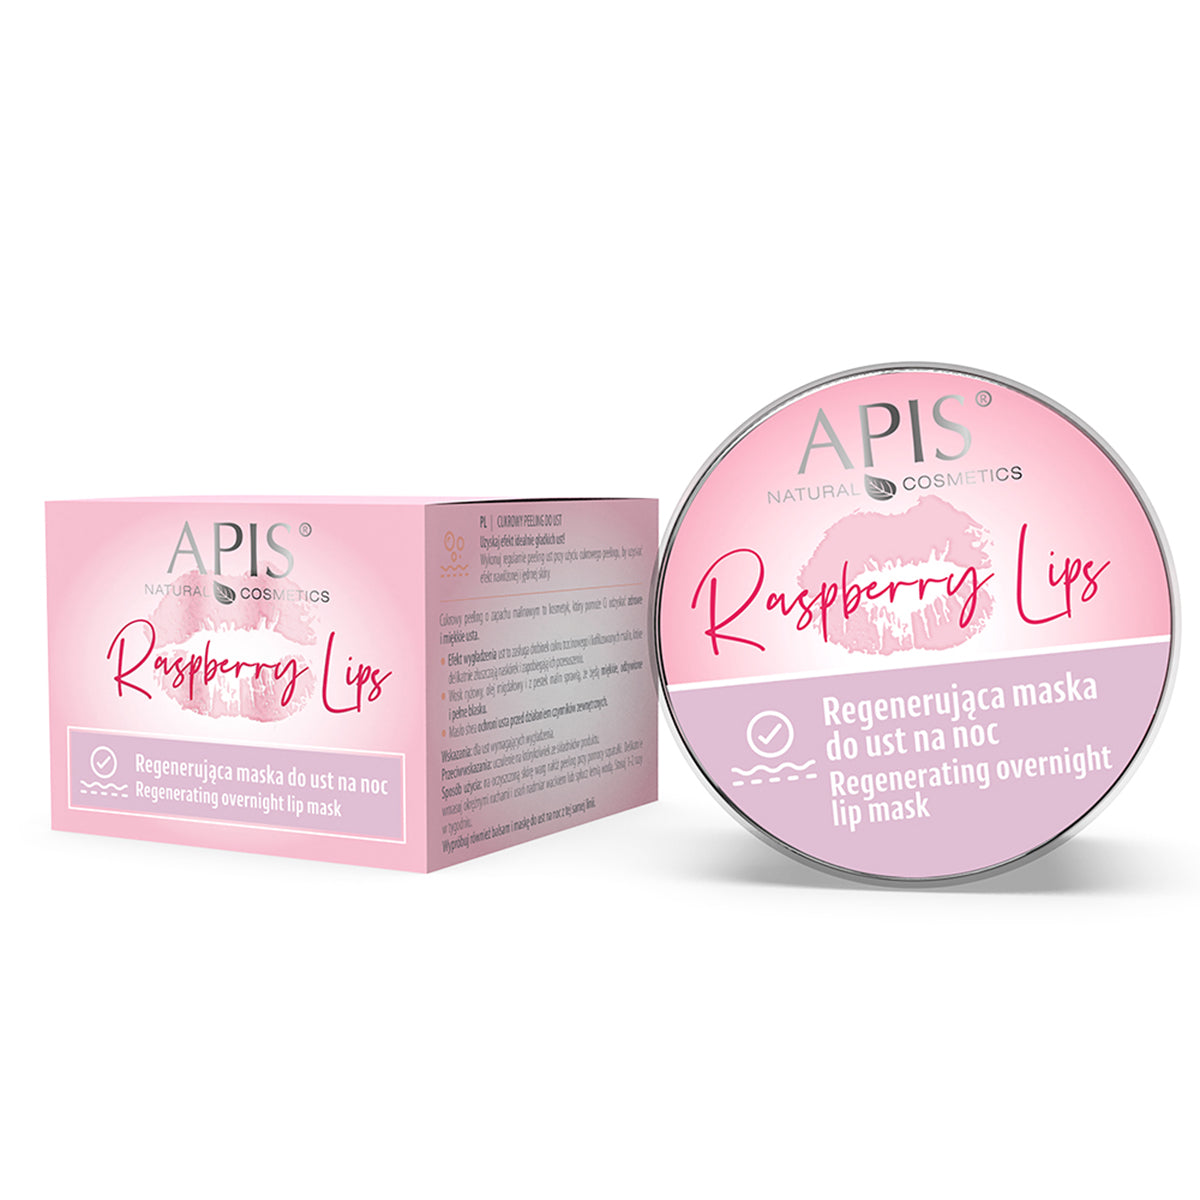 Masque de nuit régénérant pour les lèvres Apis raspberry lips 10 ml